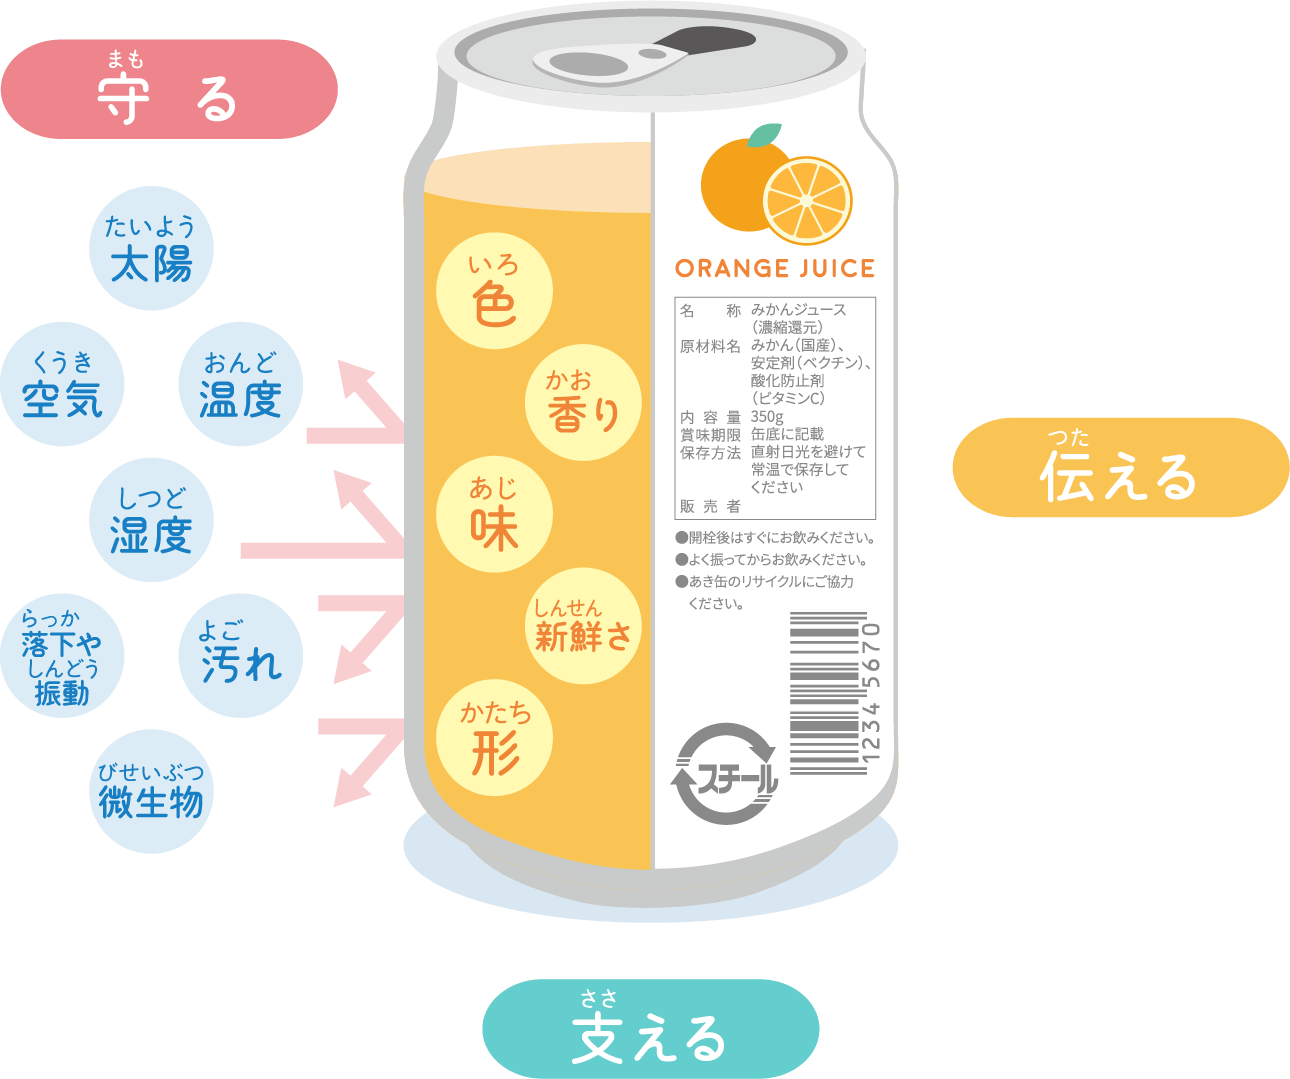 缶の説明